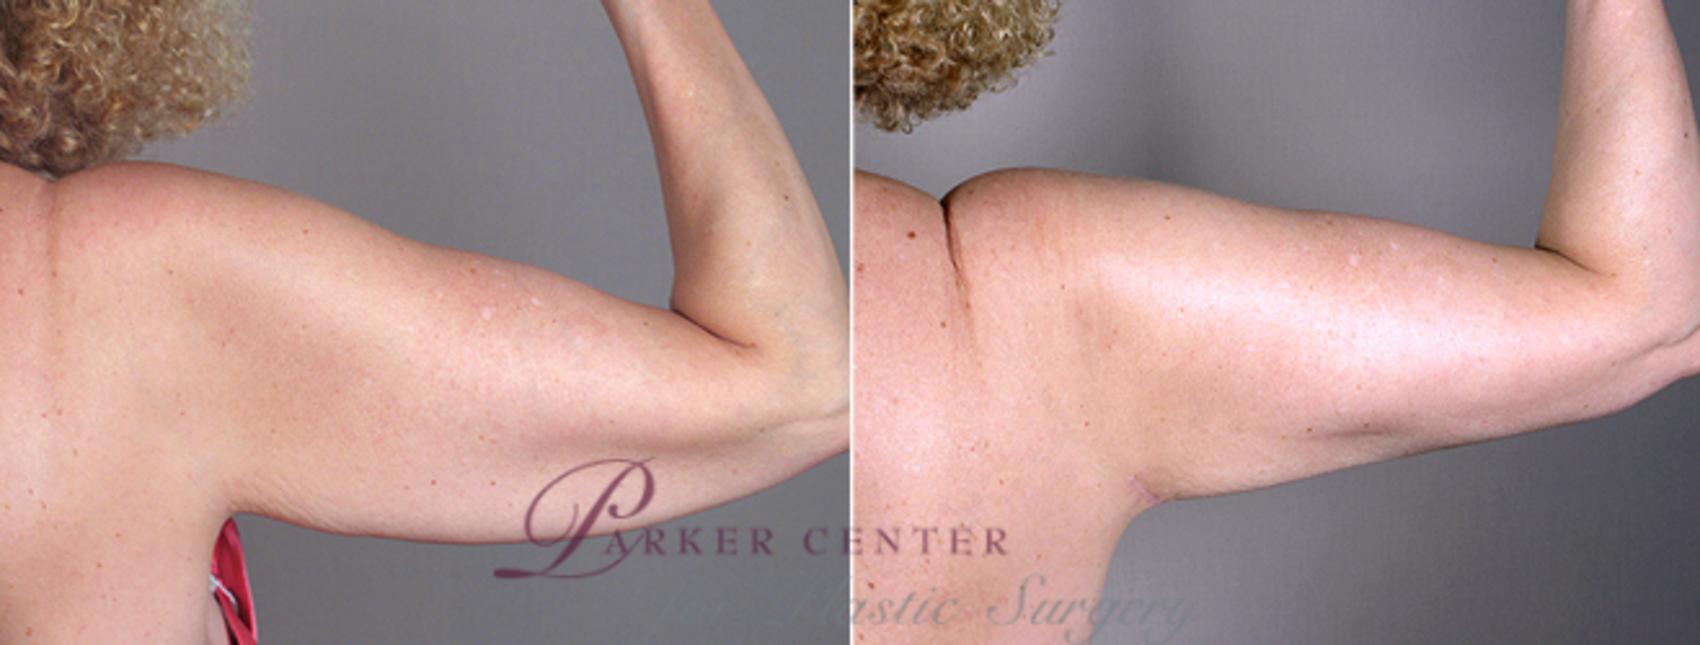 Upper Arm Rejuvenation Case 826 Before & After View #4 | Paramus, NJ | Parker Center for Plastic Surgery